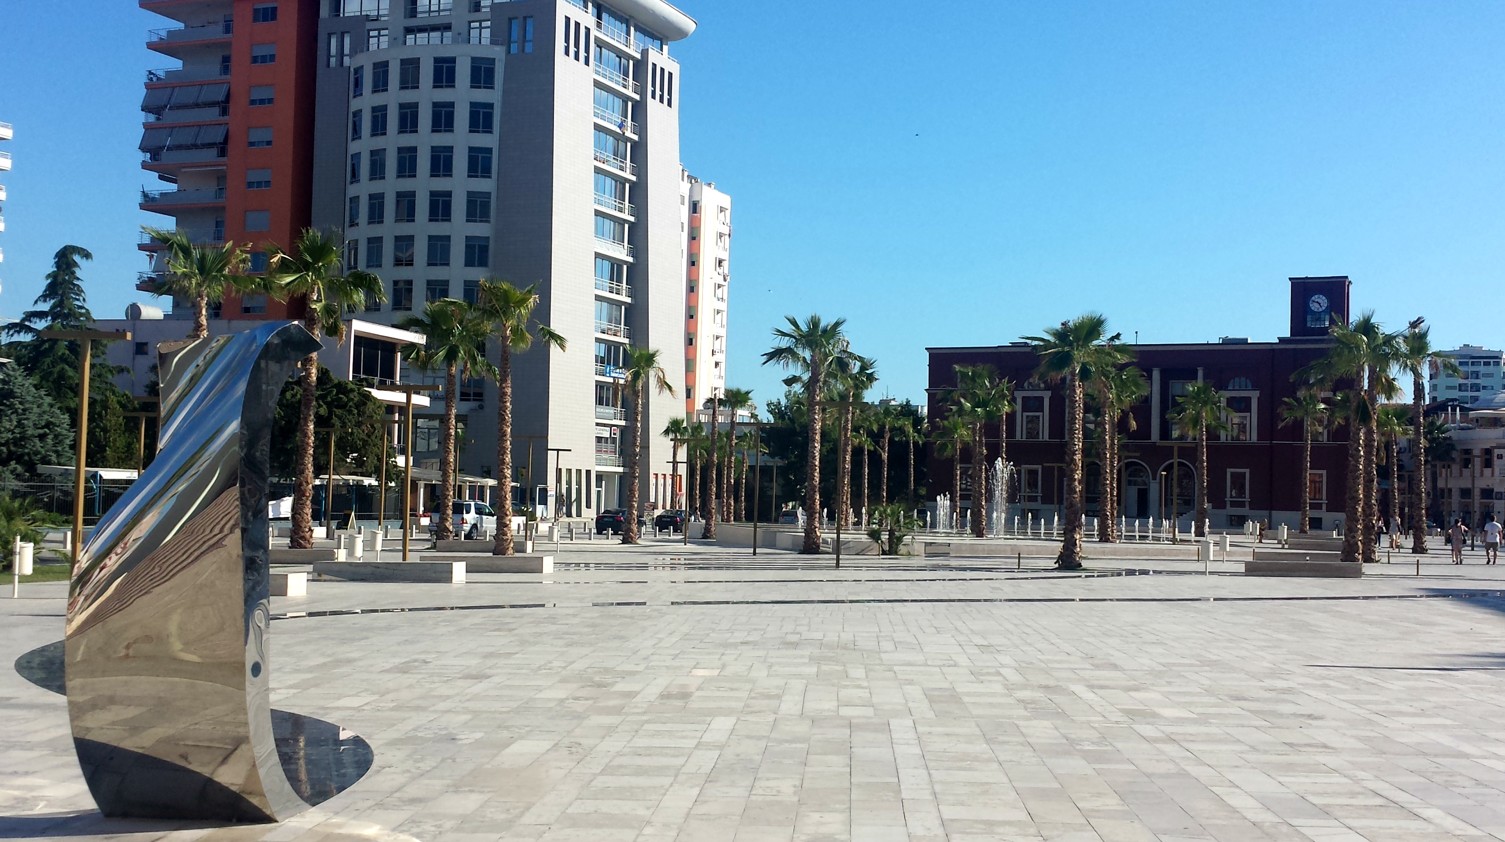 Durrësi, qyteti më i nxehtë i Ballkanit deri më 2040, shkak betoni dhe ndërtimet